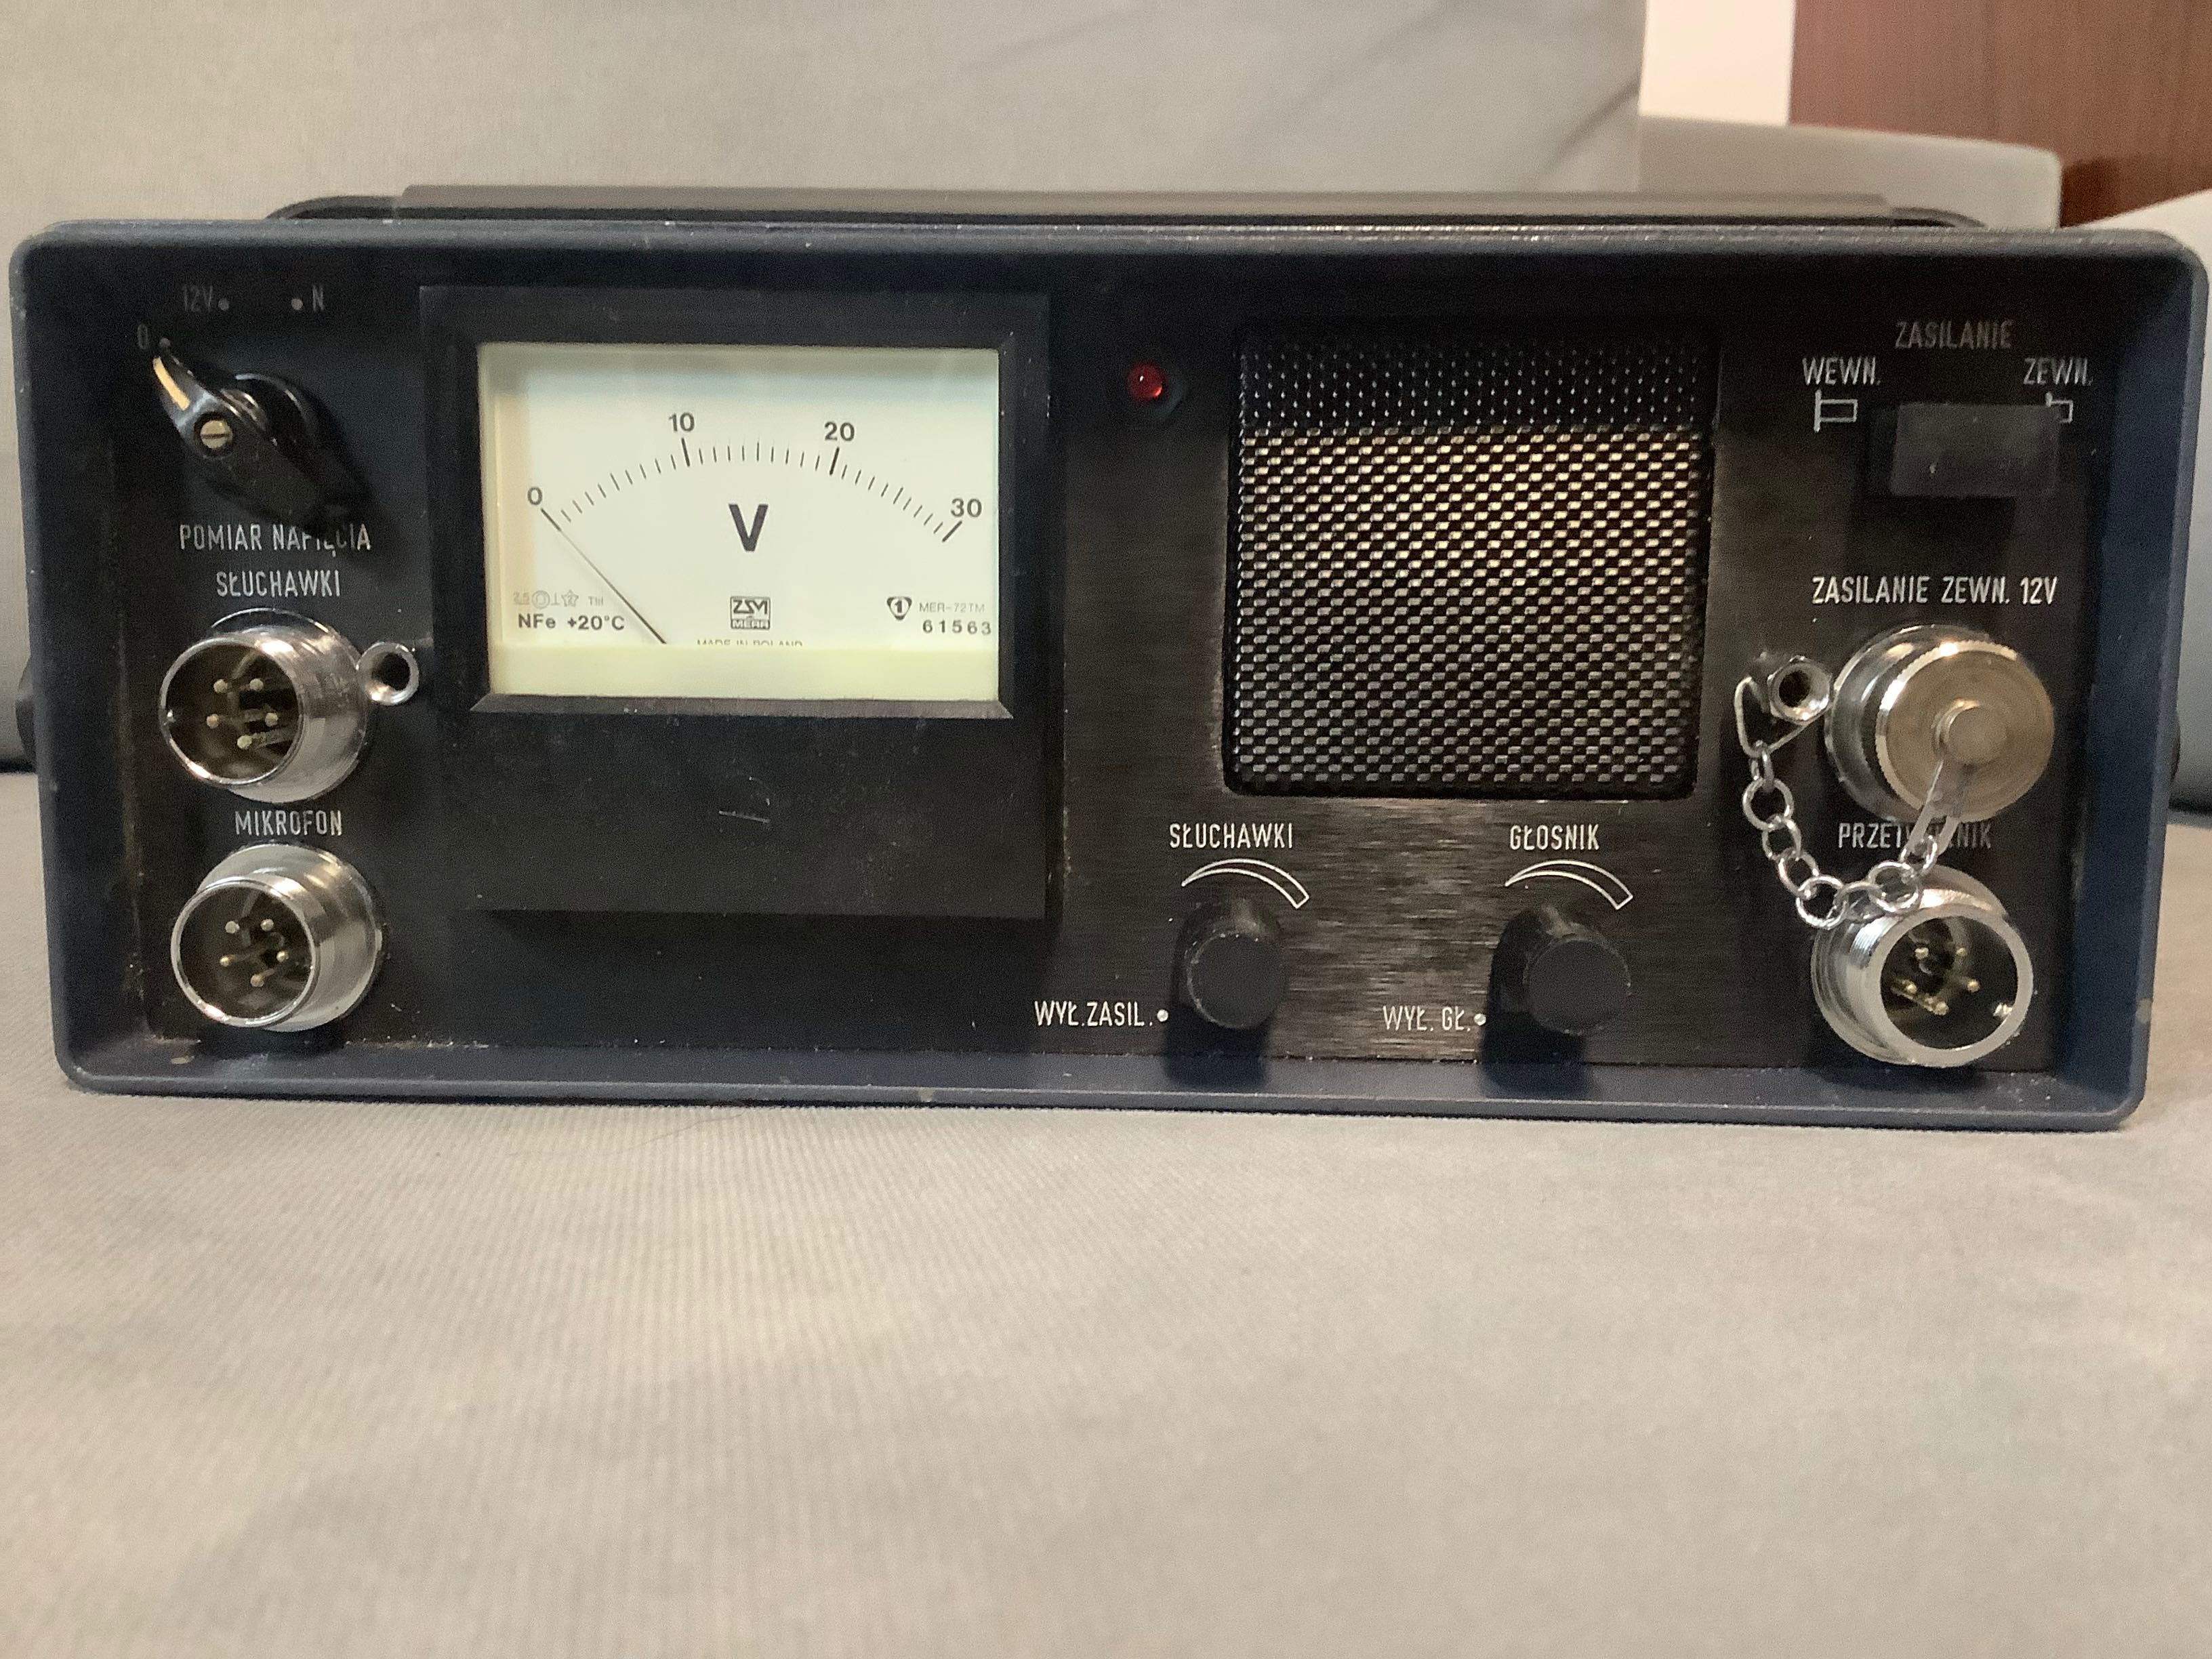 Radiotelefon Radmor Palma-72, centrala łączności z płetwonurkami